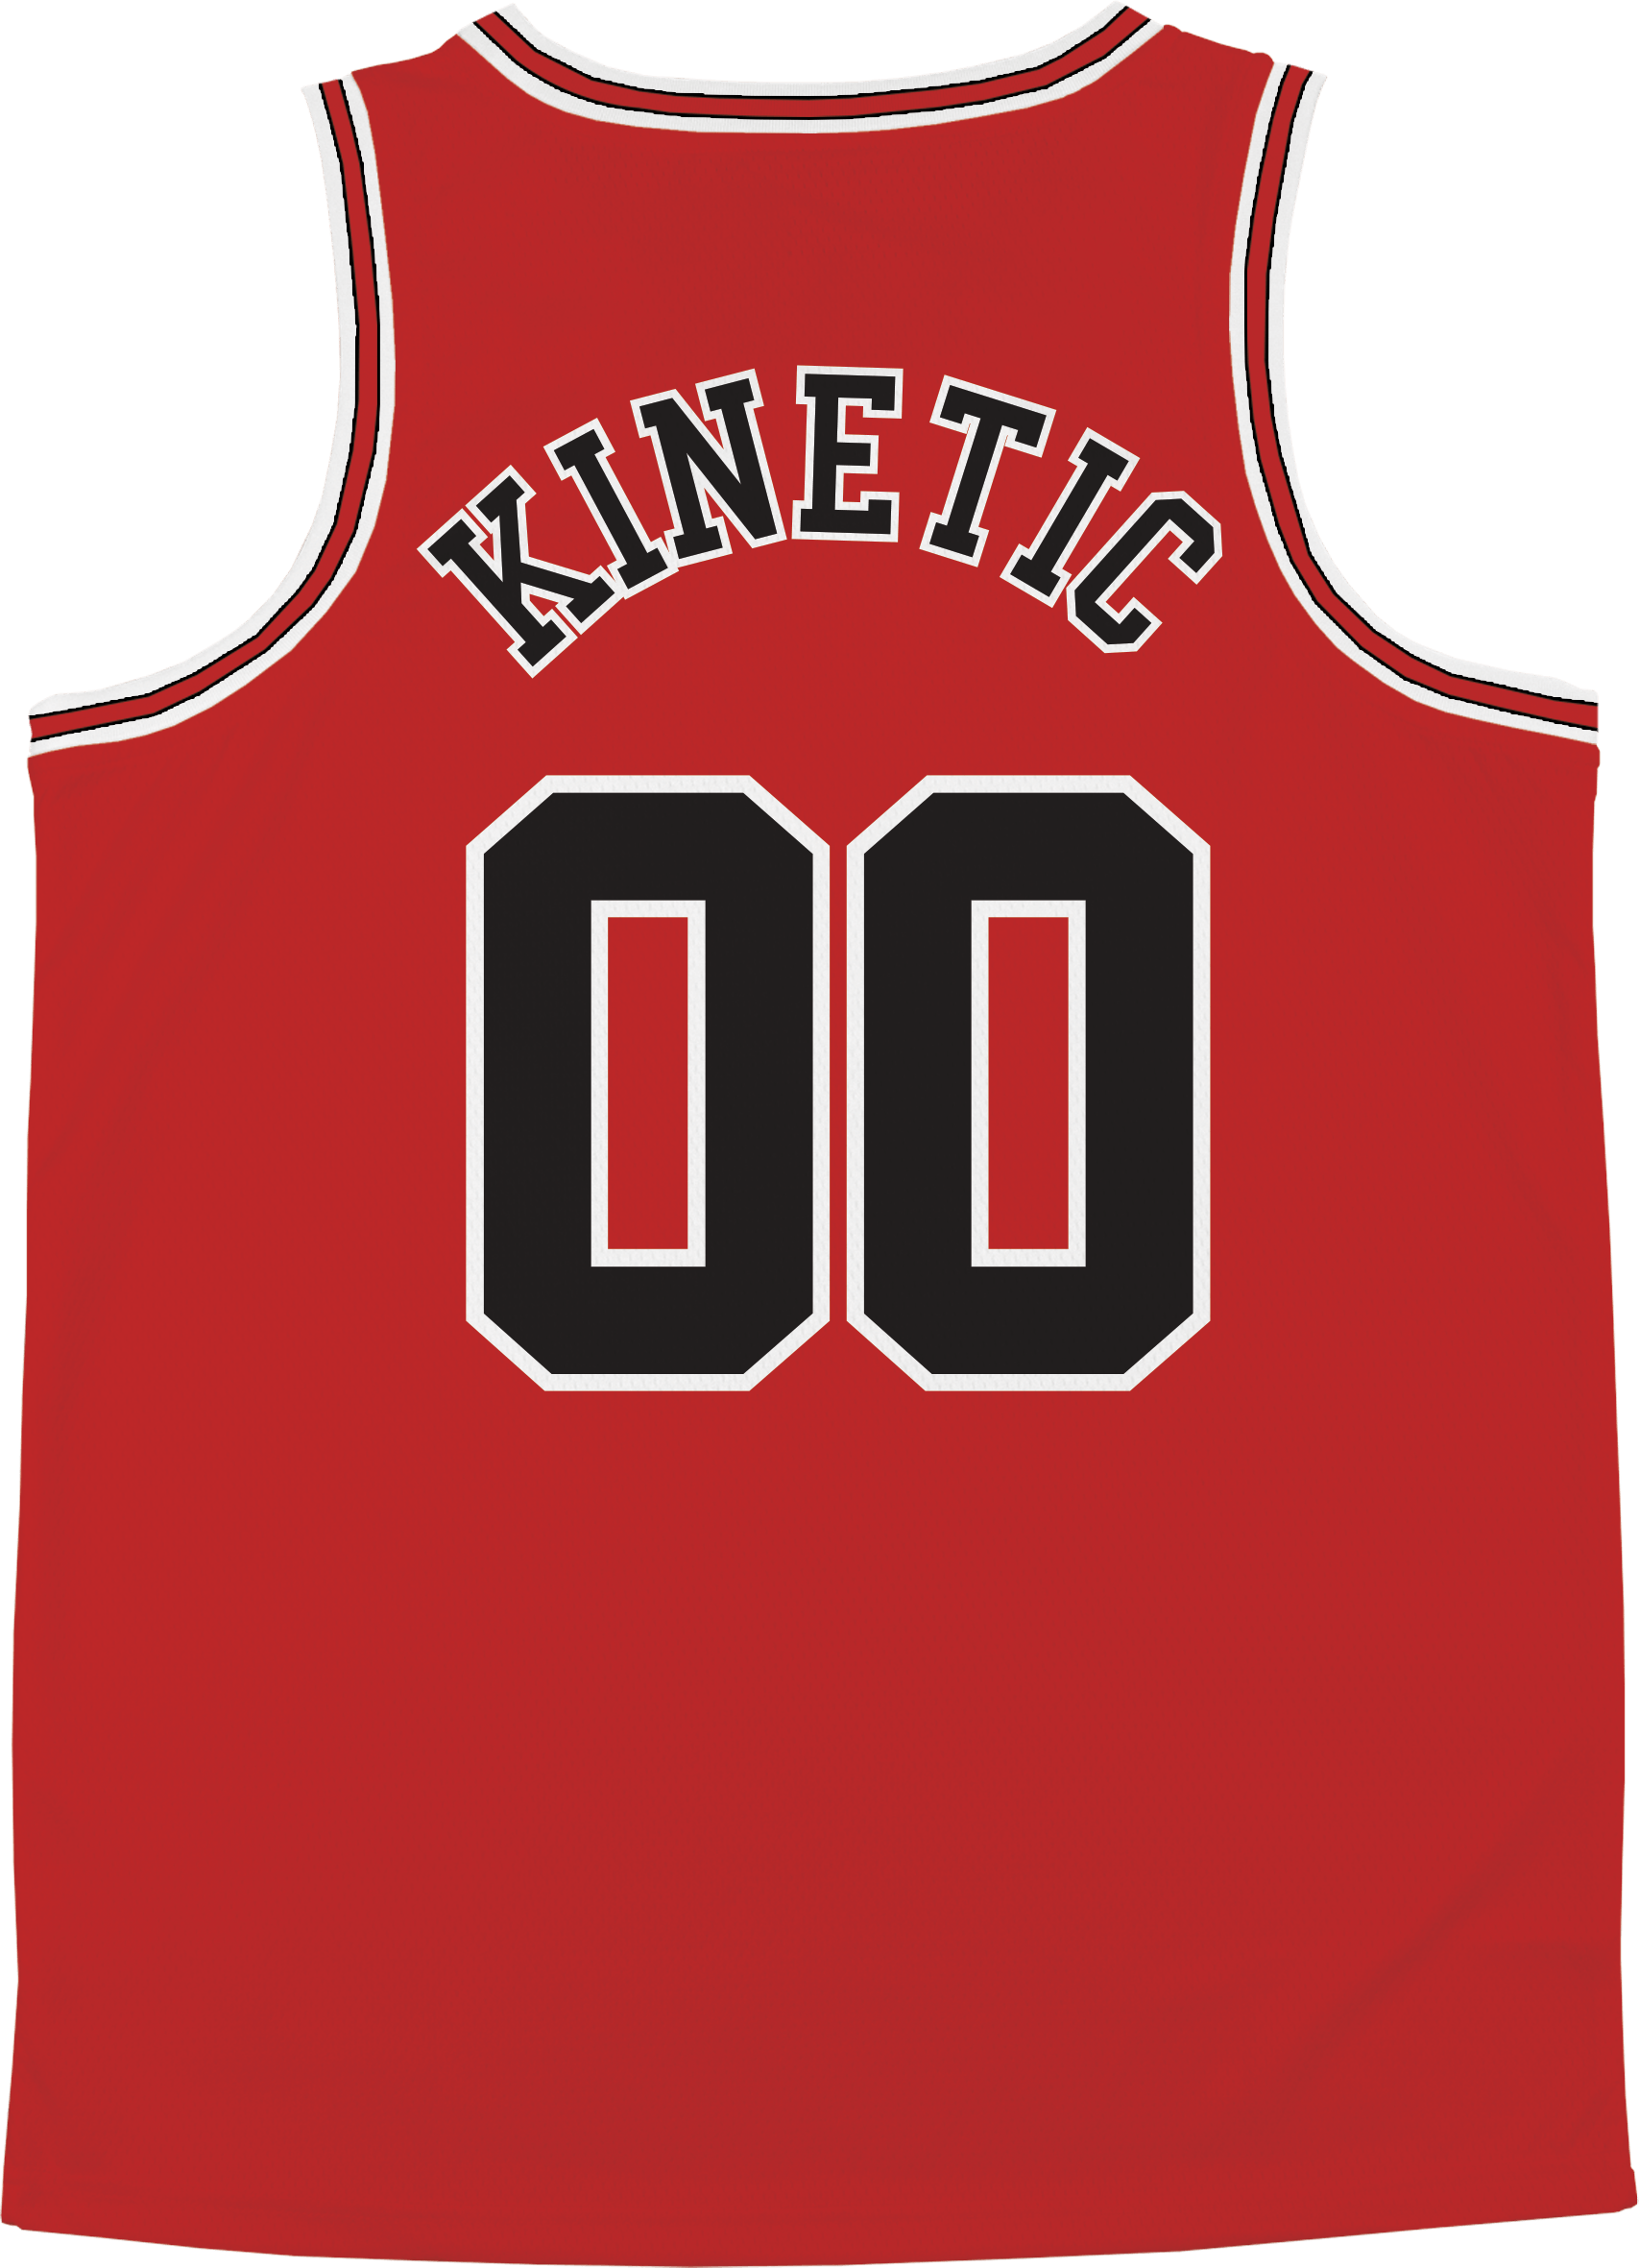 Pi Kappa Alpha - Big Red Basketball Jersey Premium Basketball Kinetic Society LLC 